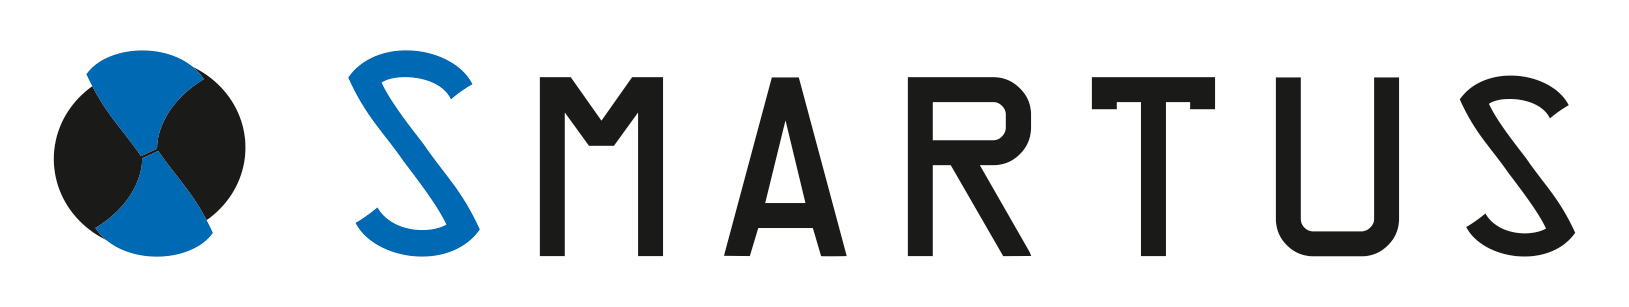 SMARTUS Szerszámgép Kereskedelmi Zrt. Logo